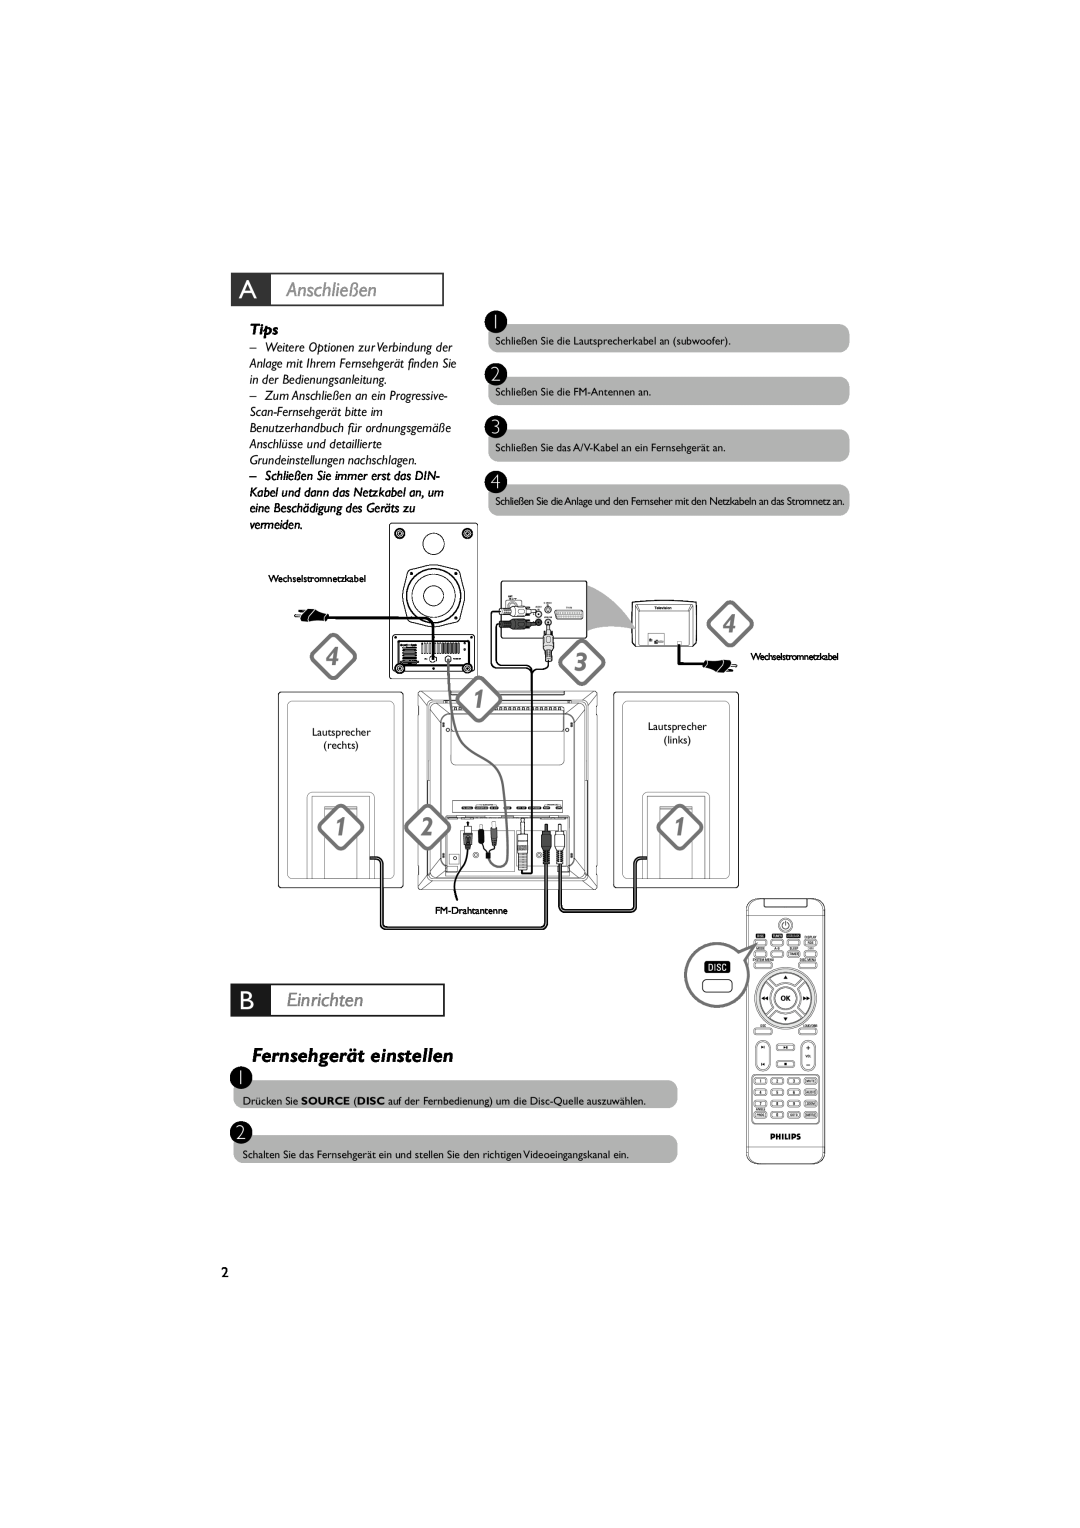 Philips MCD288E/12 user manual B Einrichten, Fernsehgerät einstellen, A Anschließen, Tips 